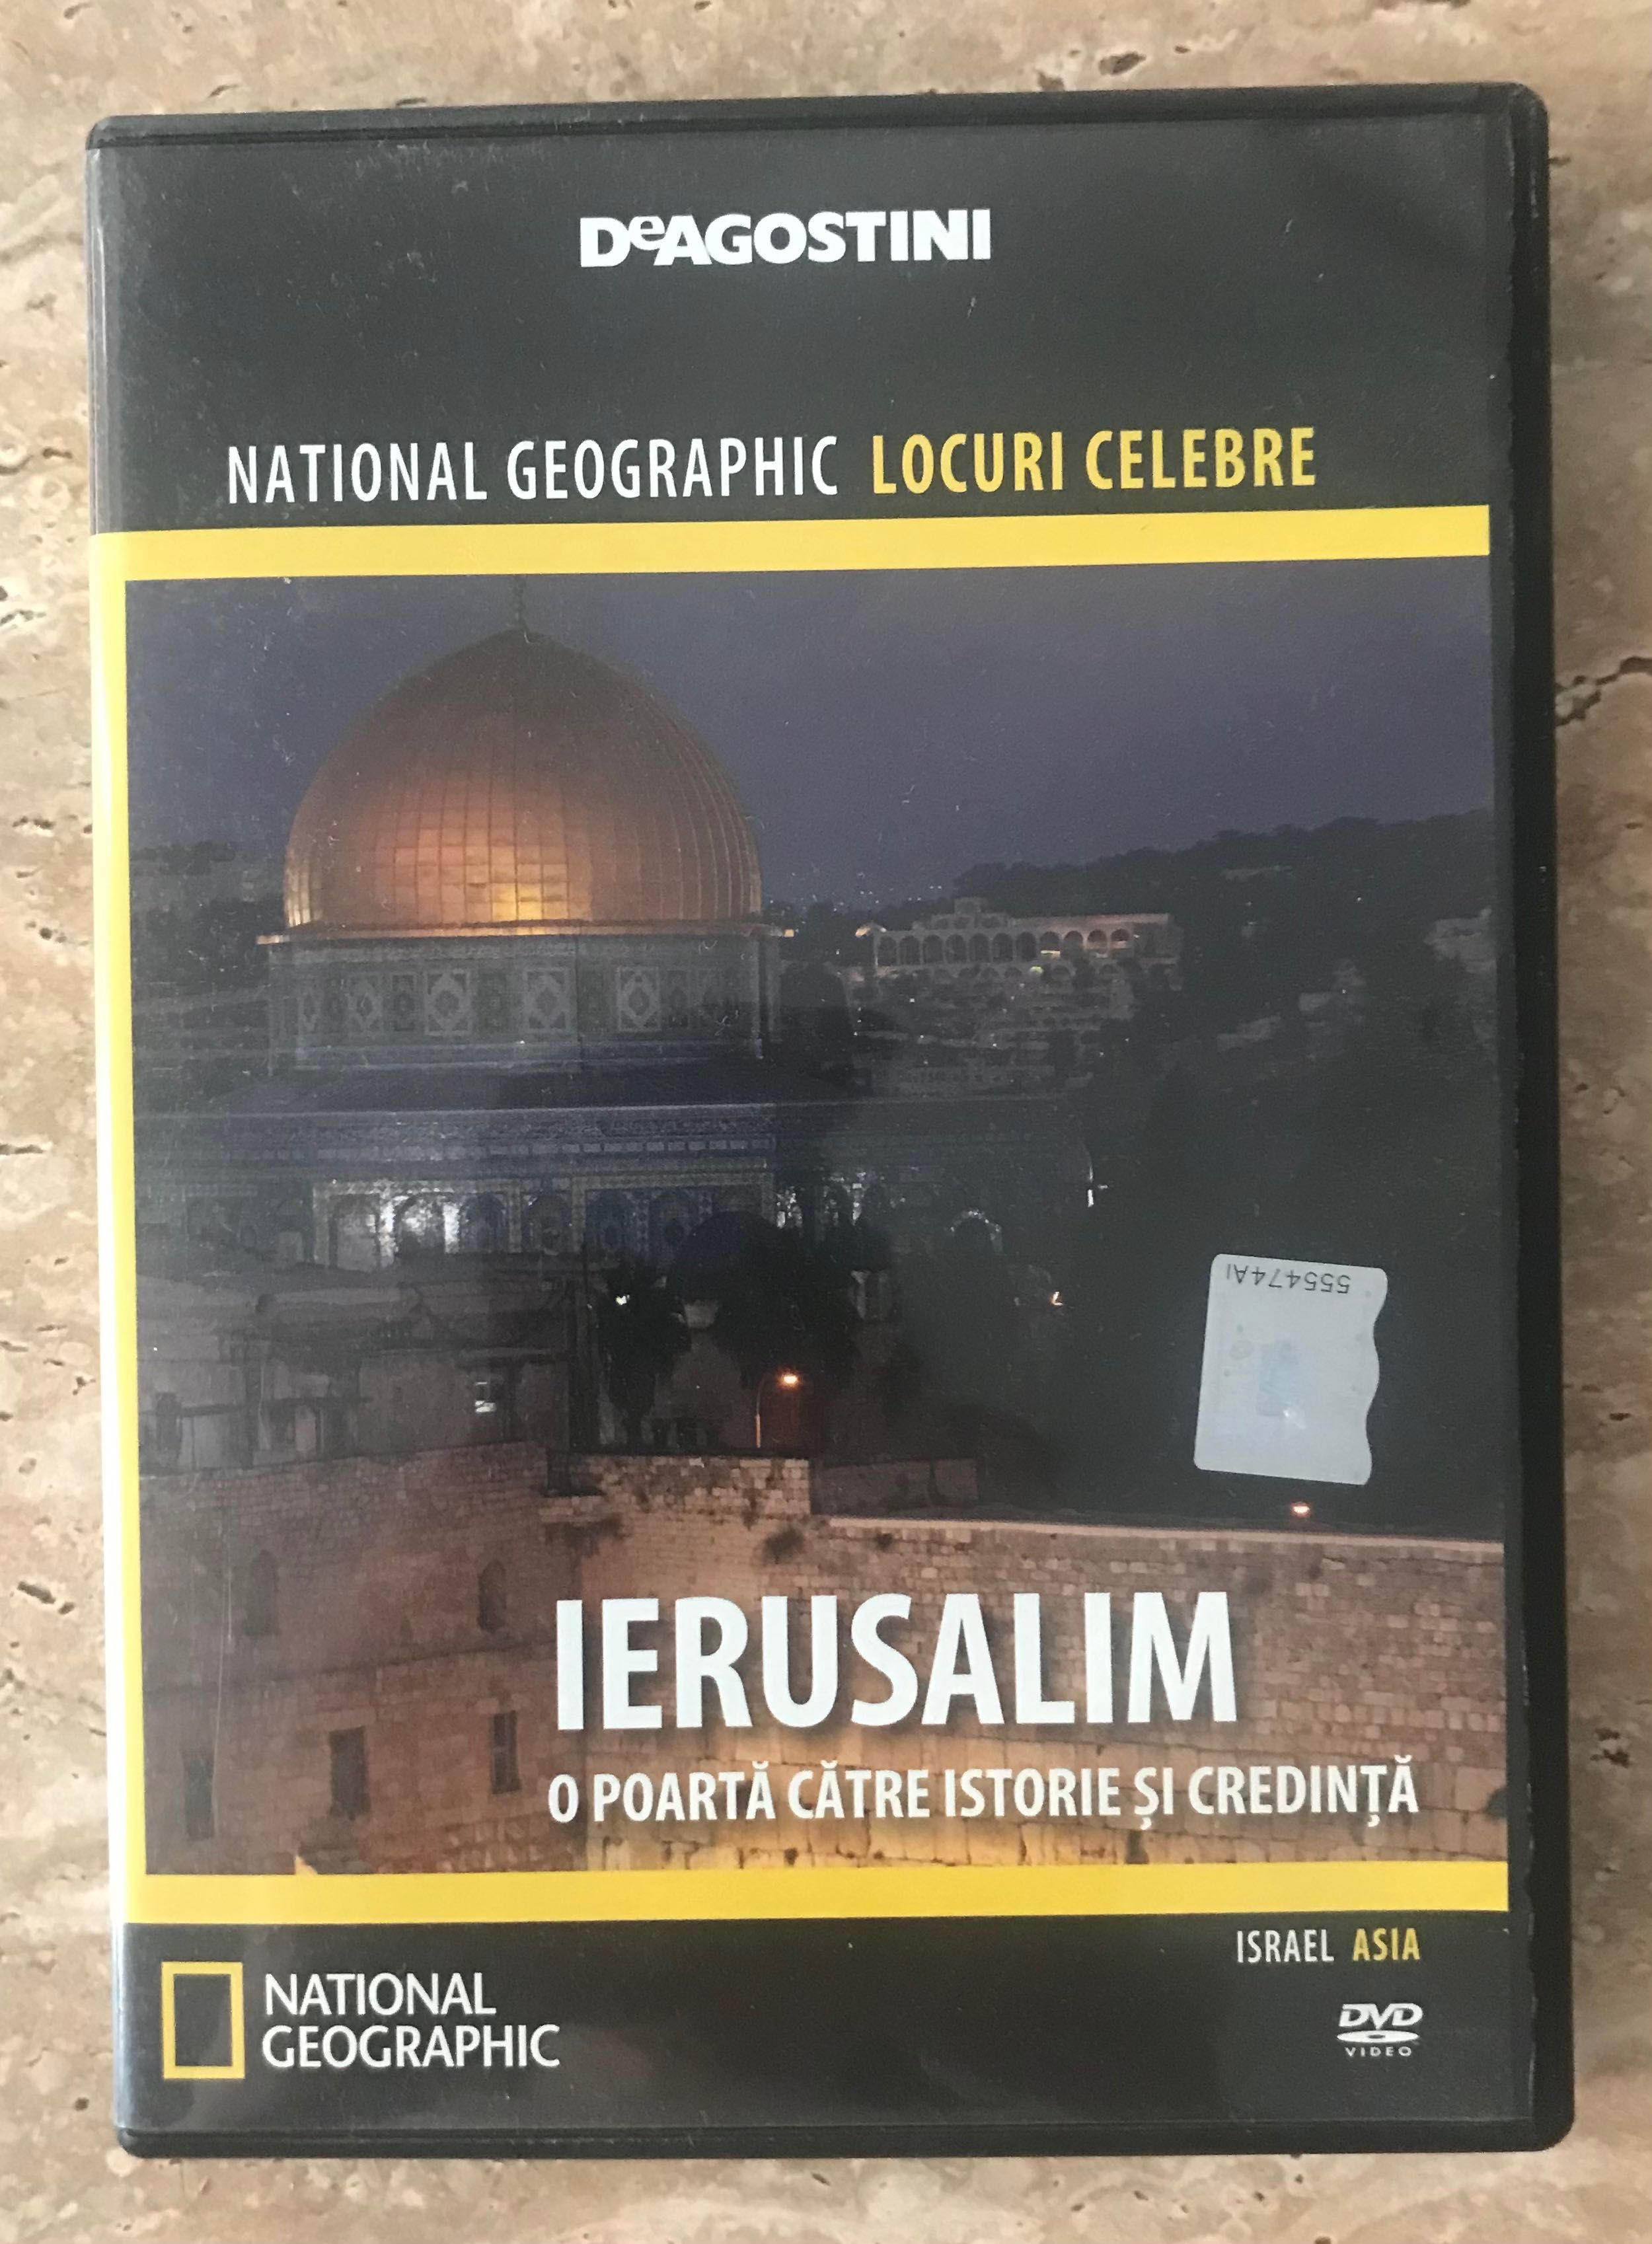 DVD film Locuri celebre Ierusalim